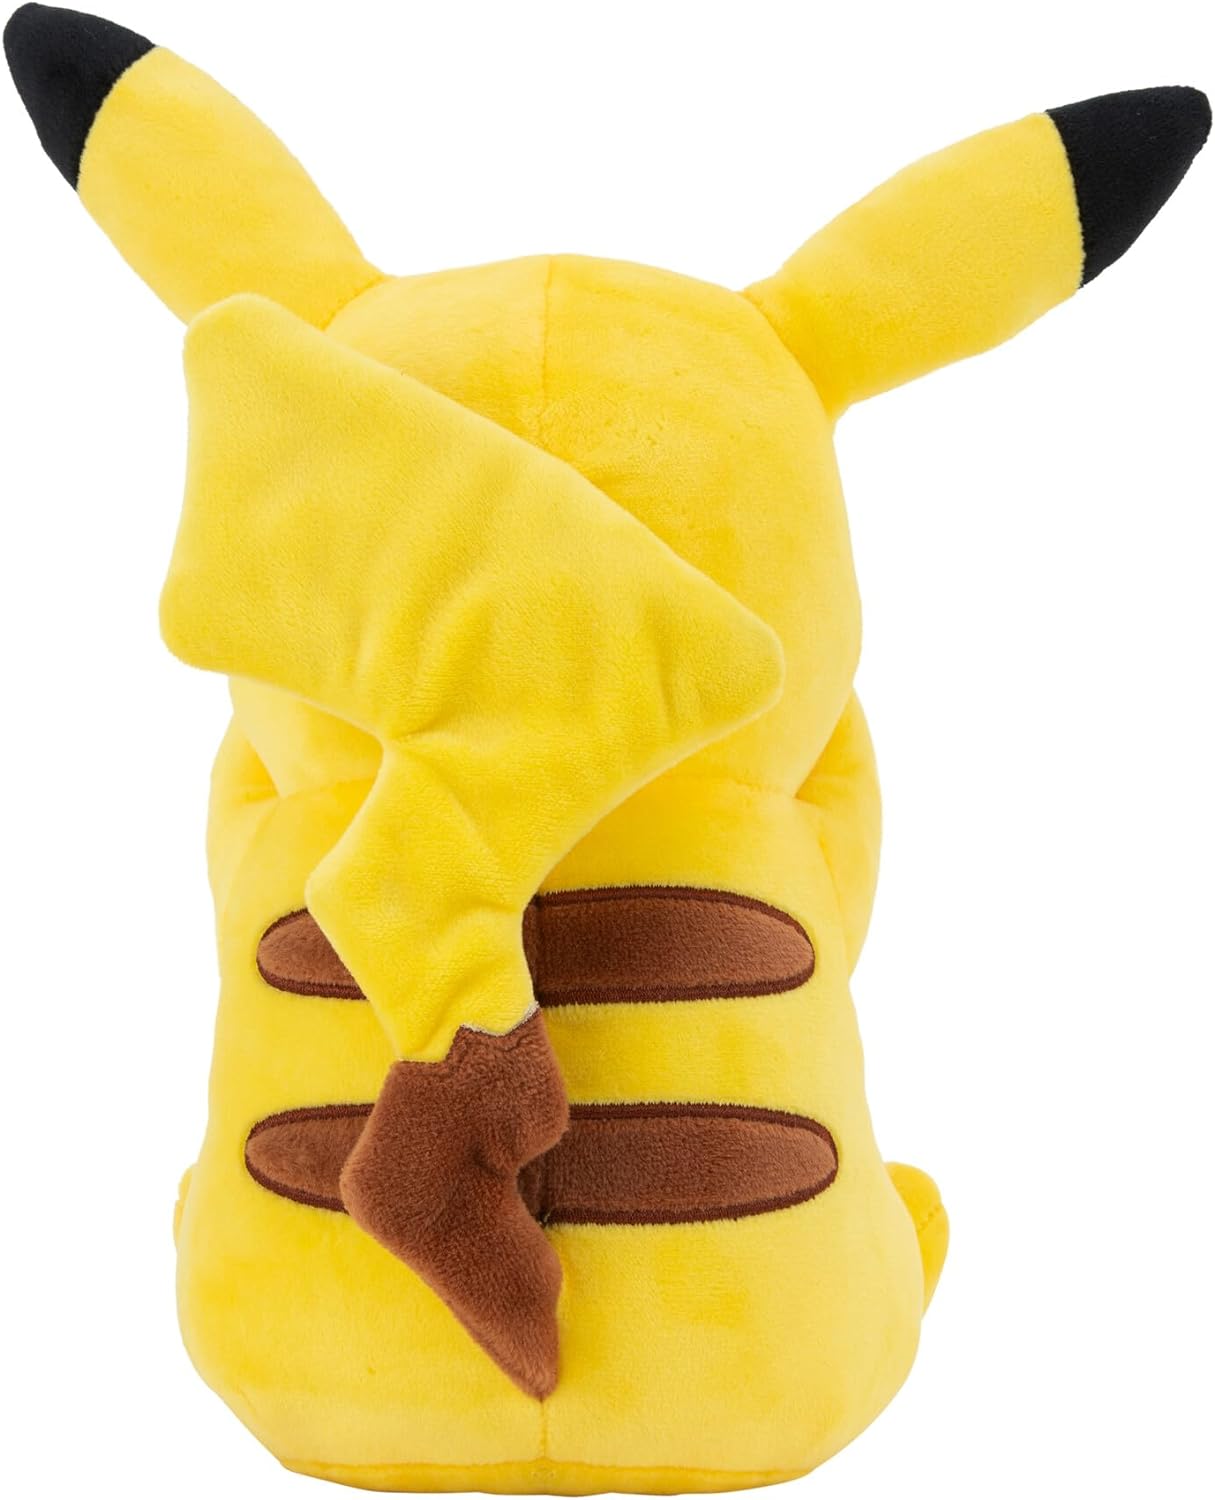 Pokemon - Pikachu 20 cm